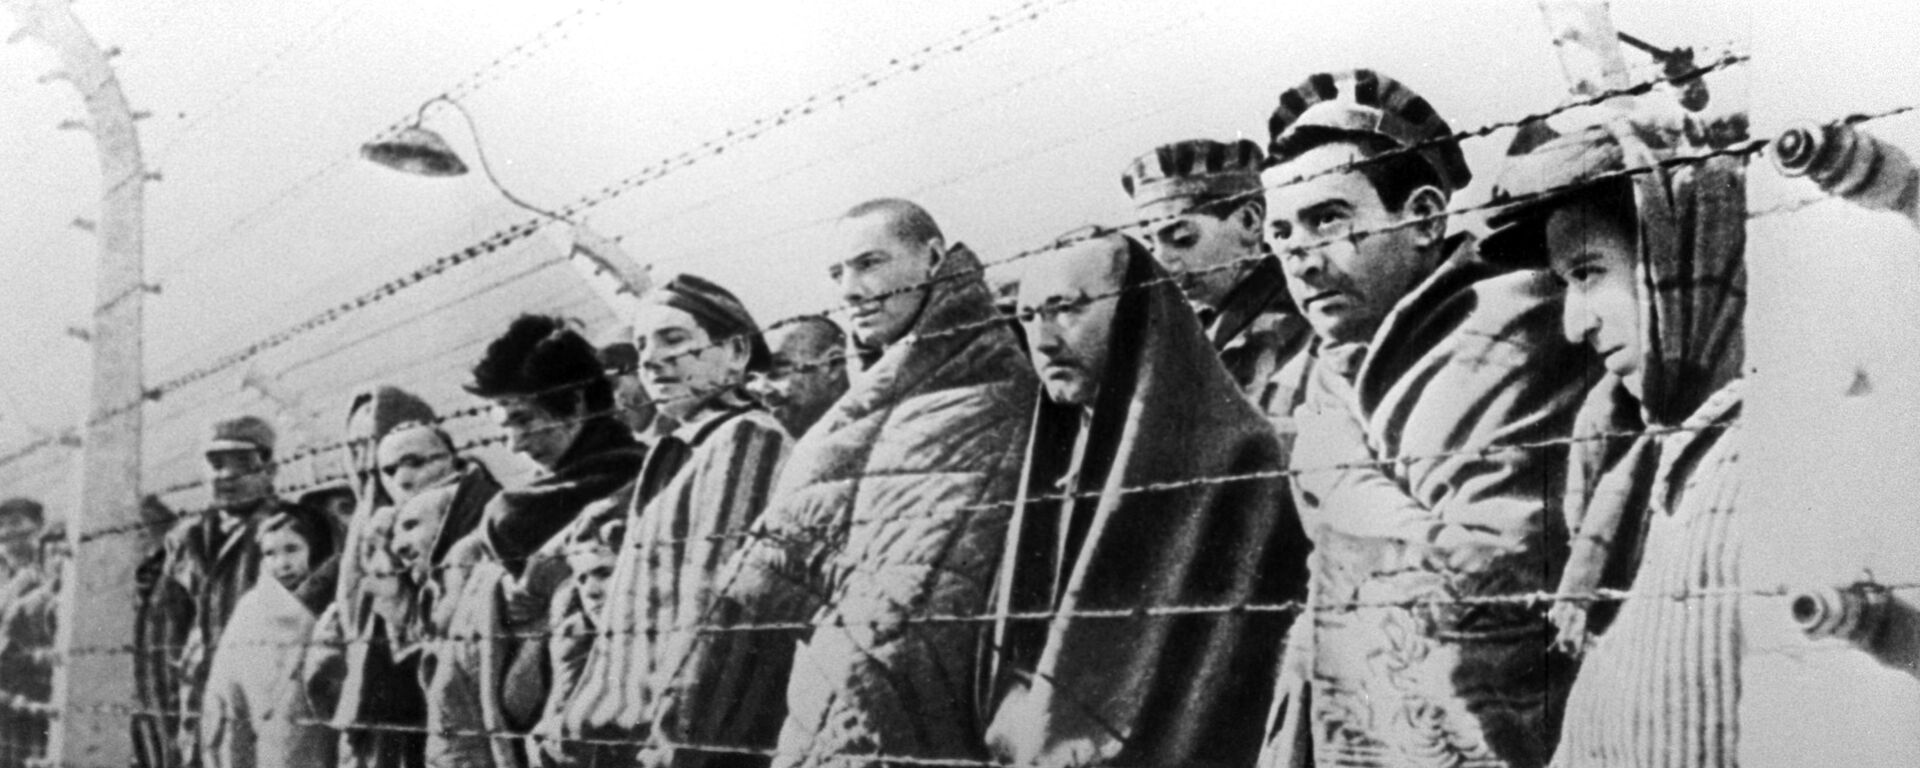 Узники концентрационного лагеря Освенцим, освобожденные войсками Красной армии в январе 1945 года - Sputnik Узбекистан, 1920, 19.10.2021